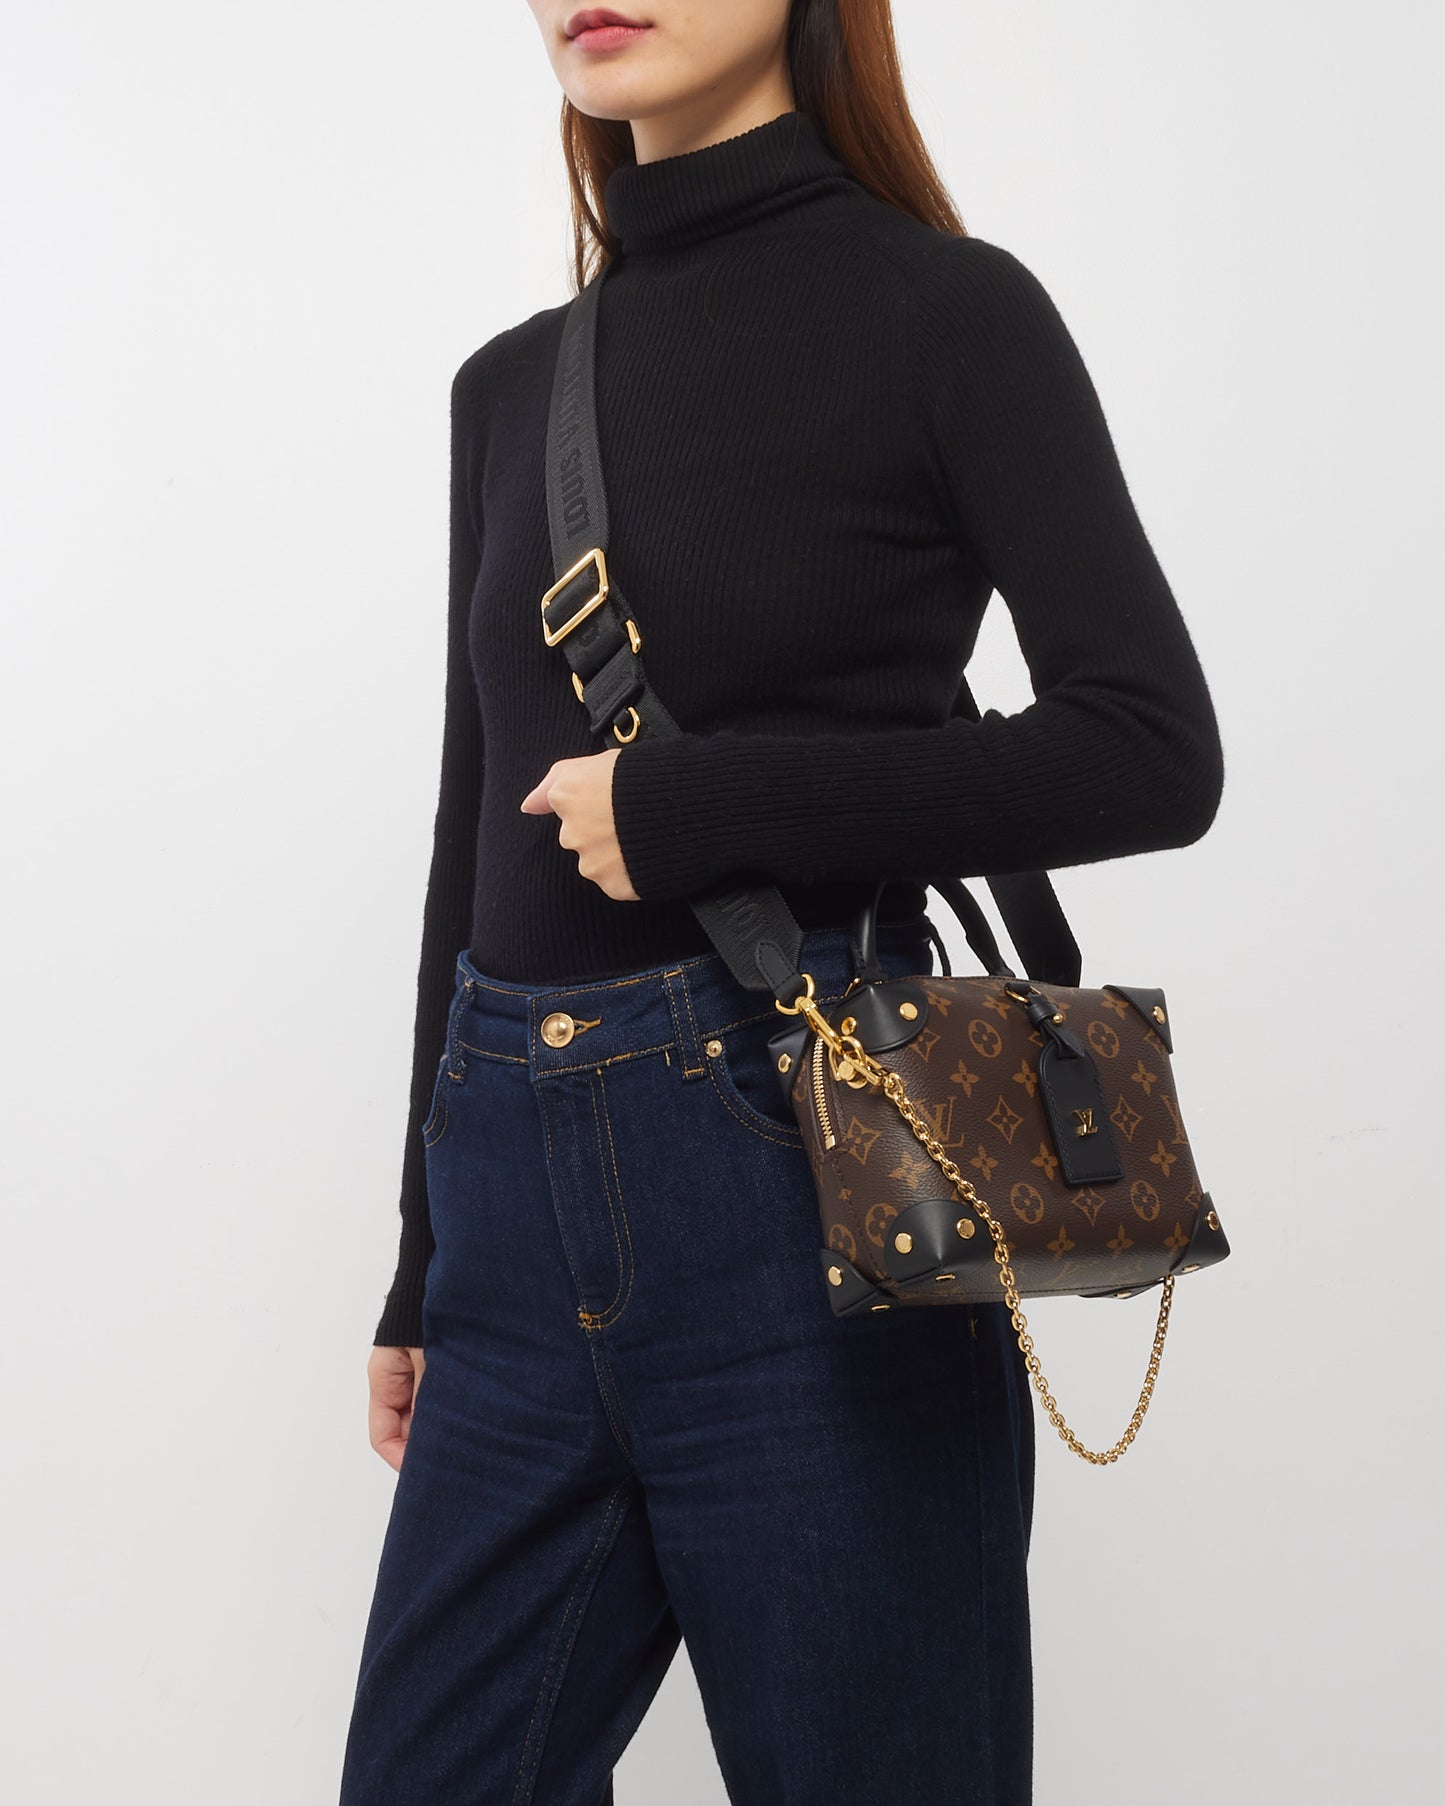 Louis Vuitton Monogram Canvas Petite Malle Souple Shoulder Bag